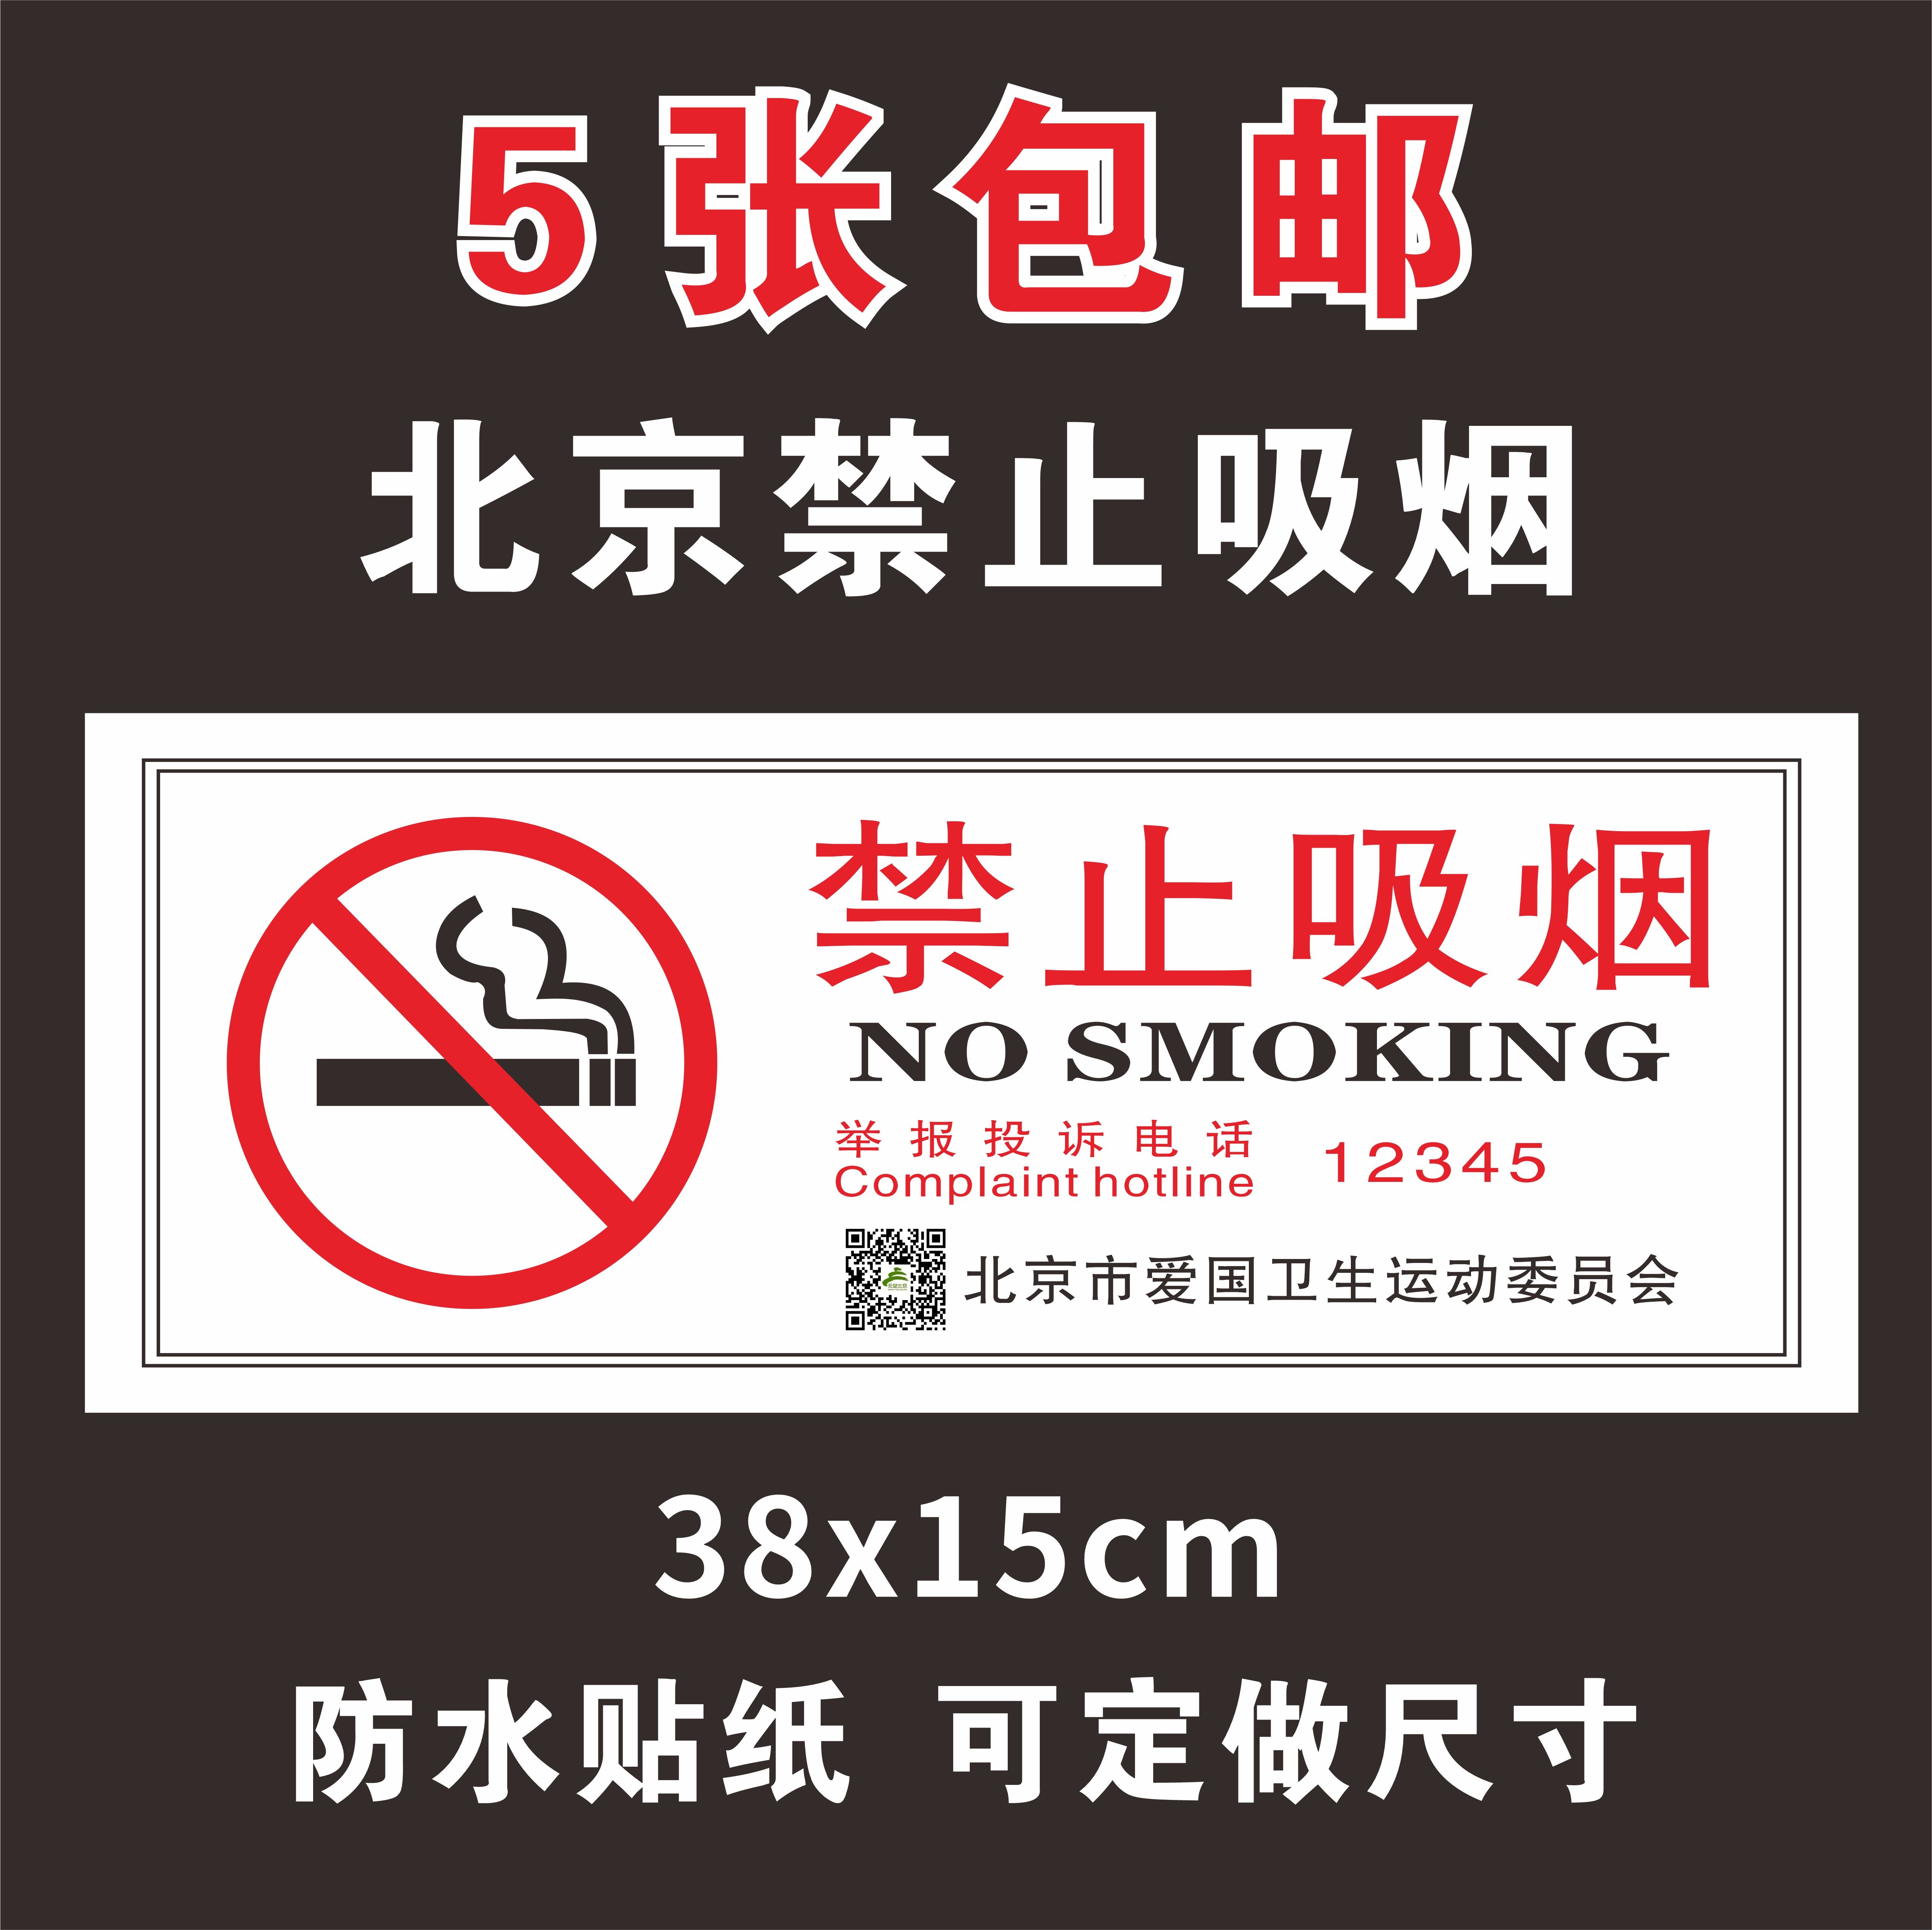 北京新版禁止吸烟标识牌举报电话12345贴纸爱国卫生委员会禁烟标